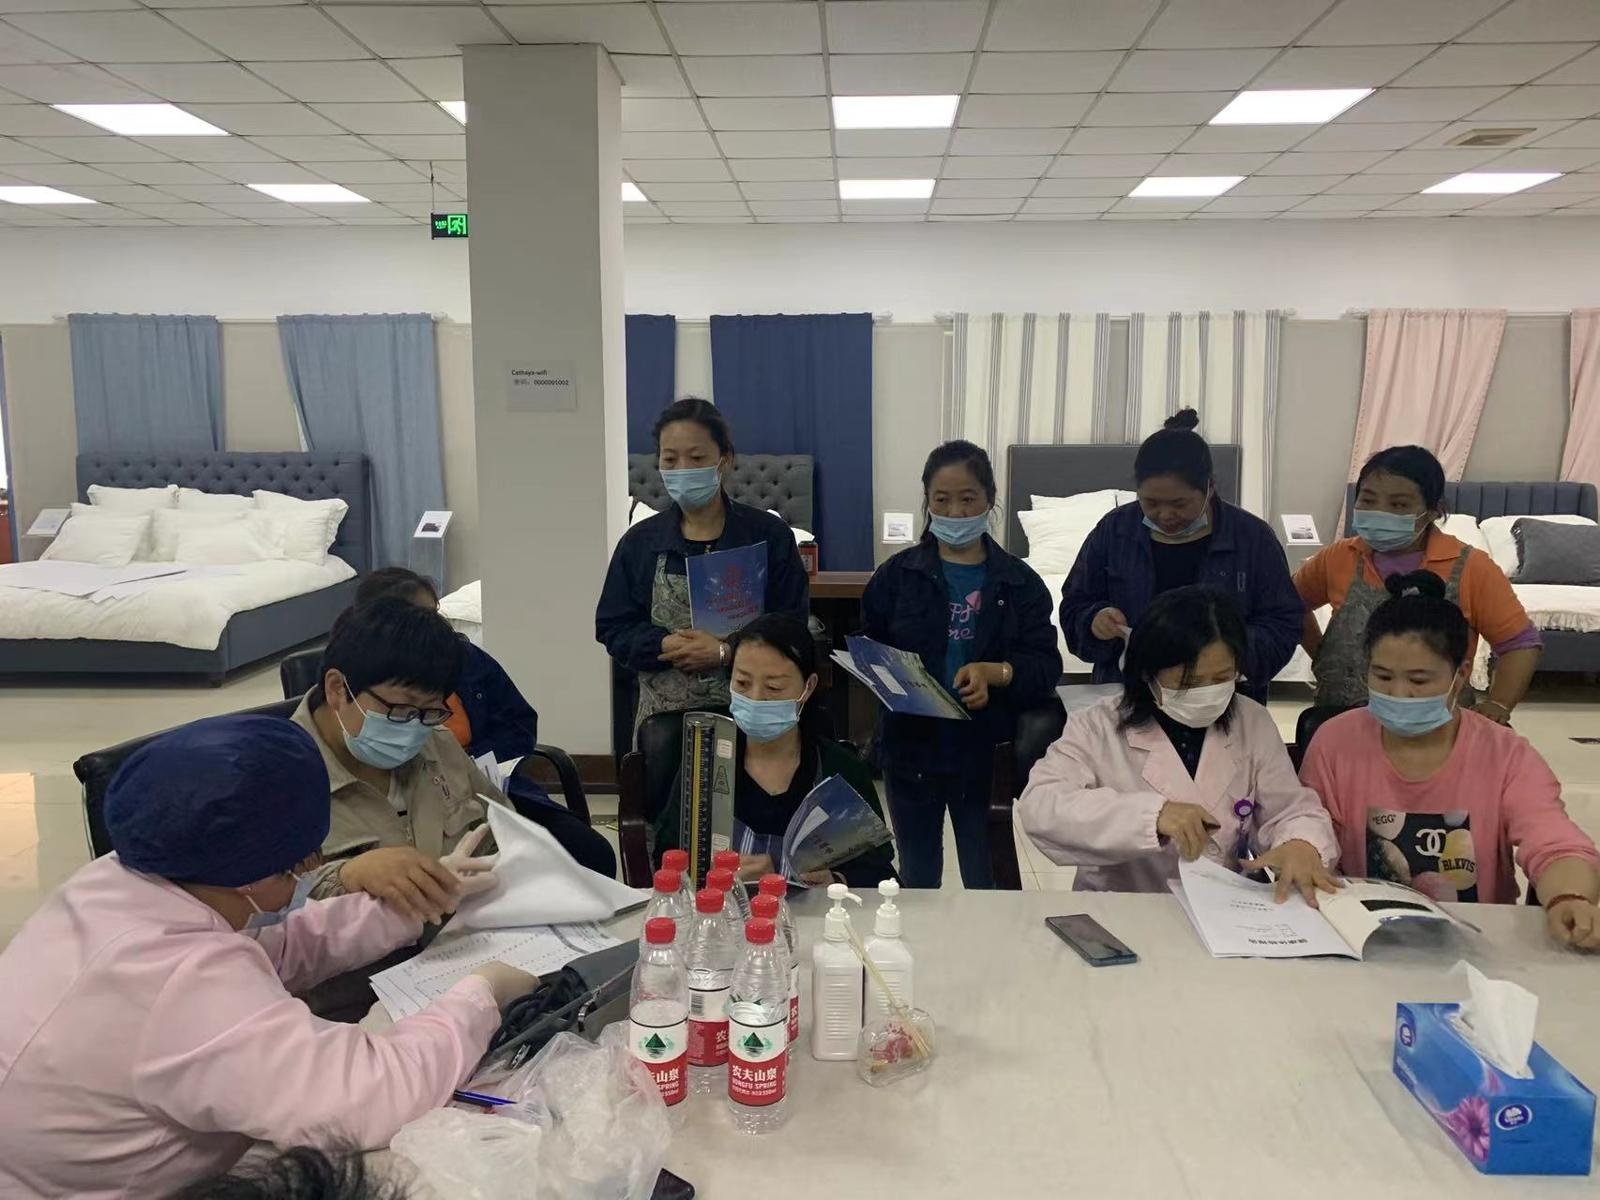 @上海灵活就业困难女职工，这项免费妇科体检福利领了吗？工会娘家人为了女同胞们的健康，可是操碎了心……